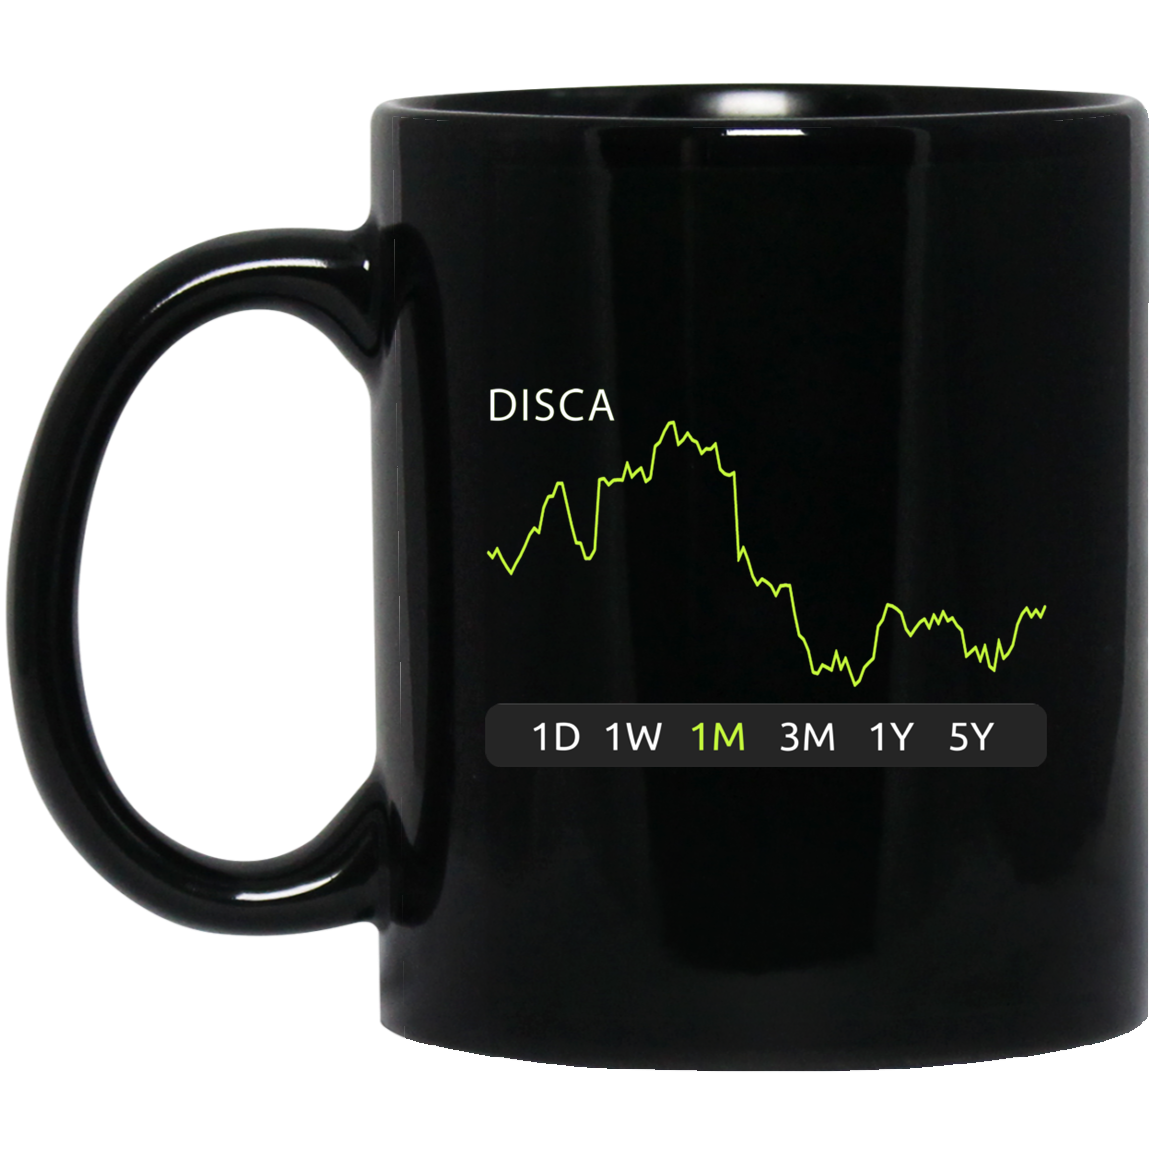 DISCA Stock 1m Mug